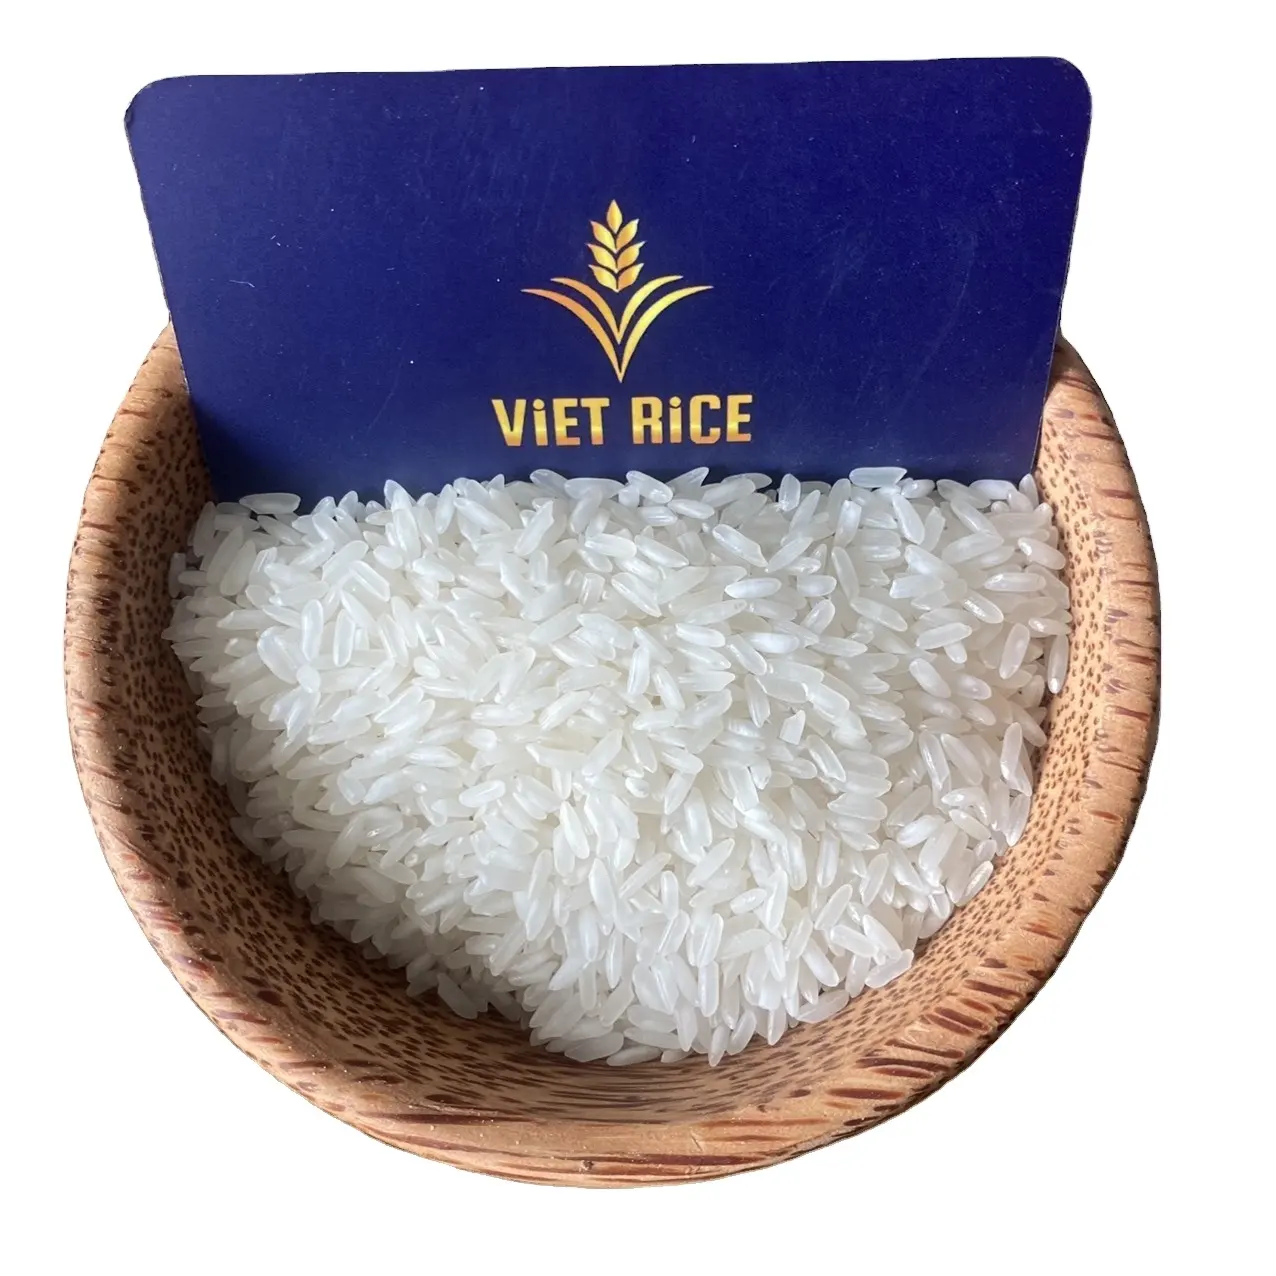 Excellent riz blanc à grain long (IR504 5% cassé) d'un exportateur et d'une usine vietnamienne fiable, VITRICE, pour un bon prix